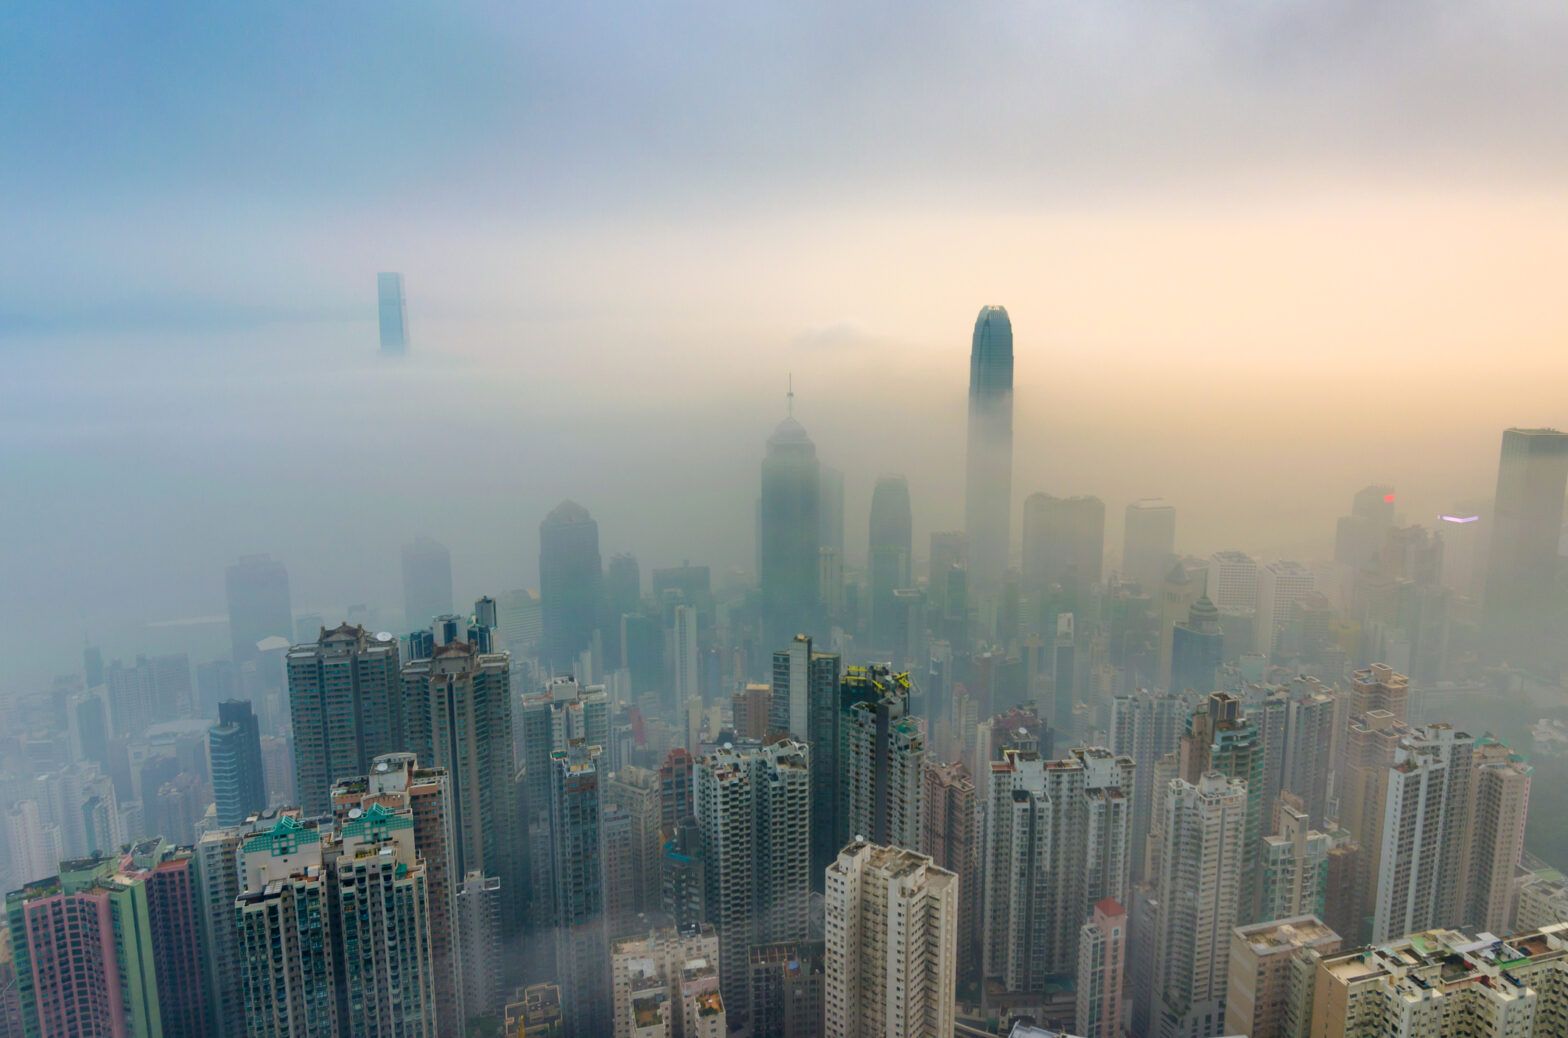 Hong Kong has carbon trading ambitions